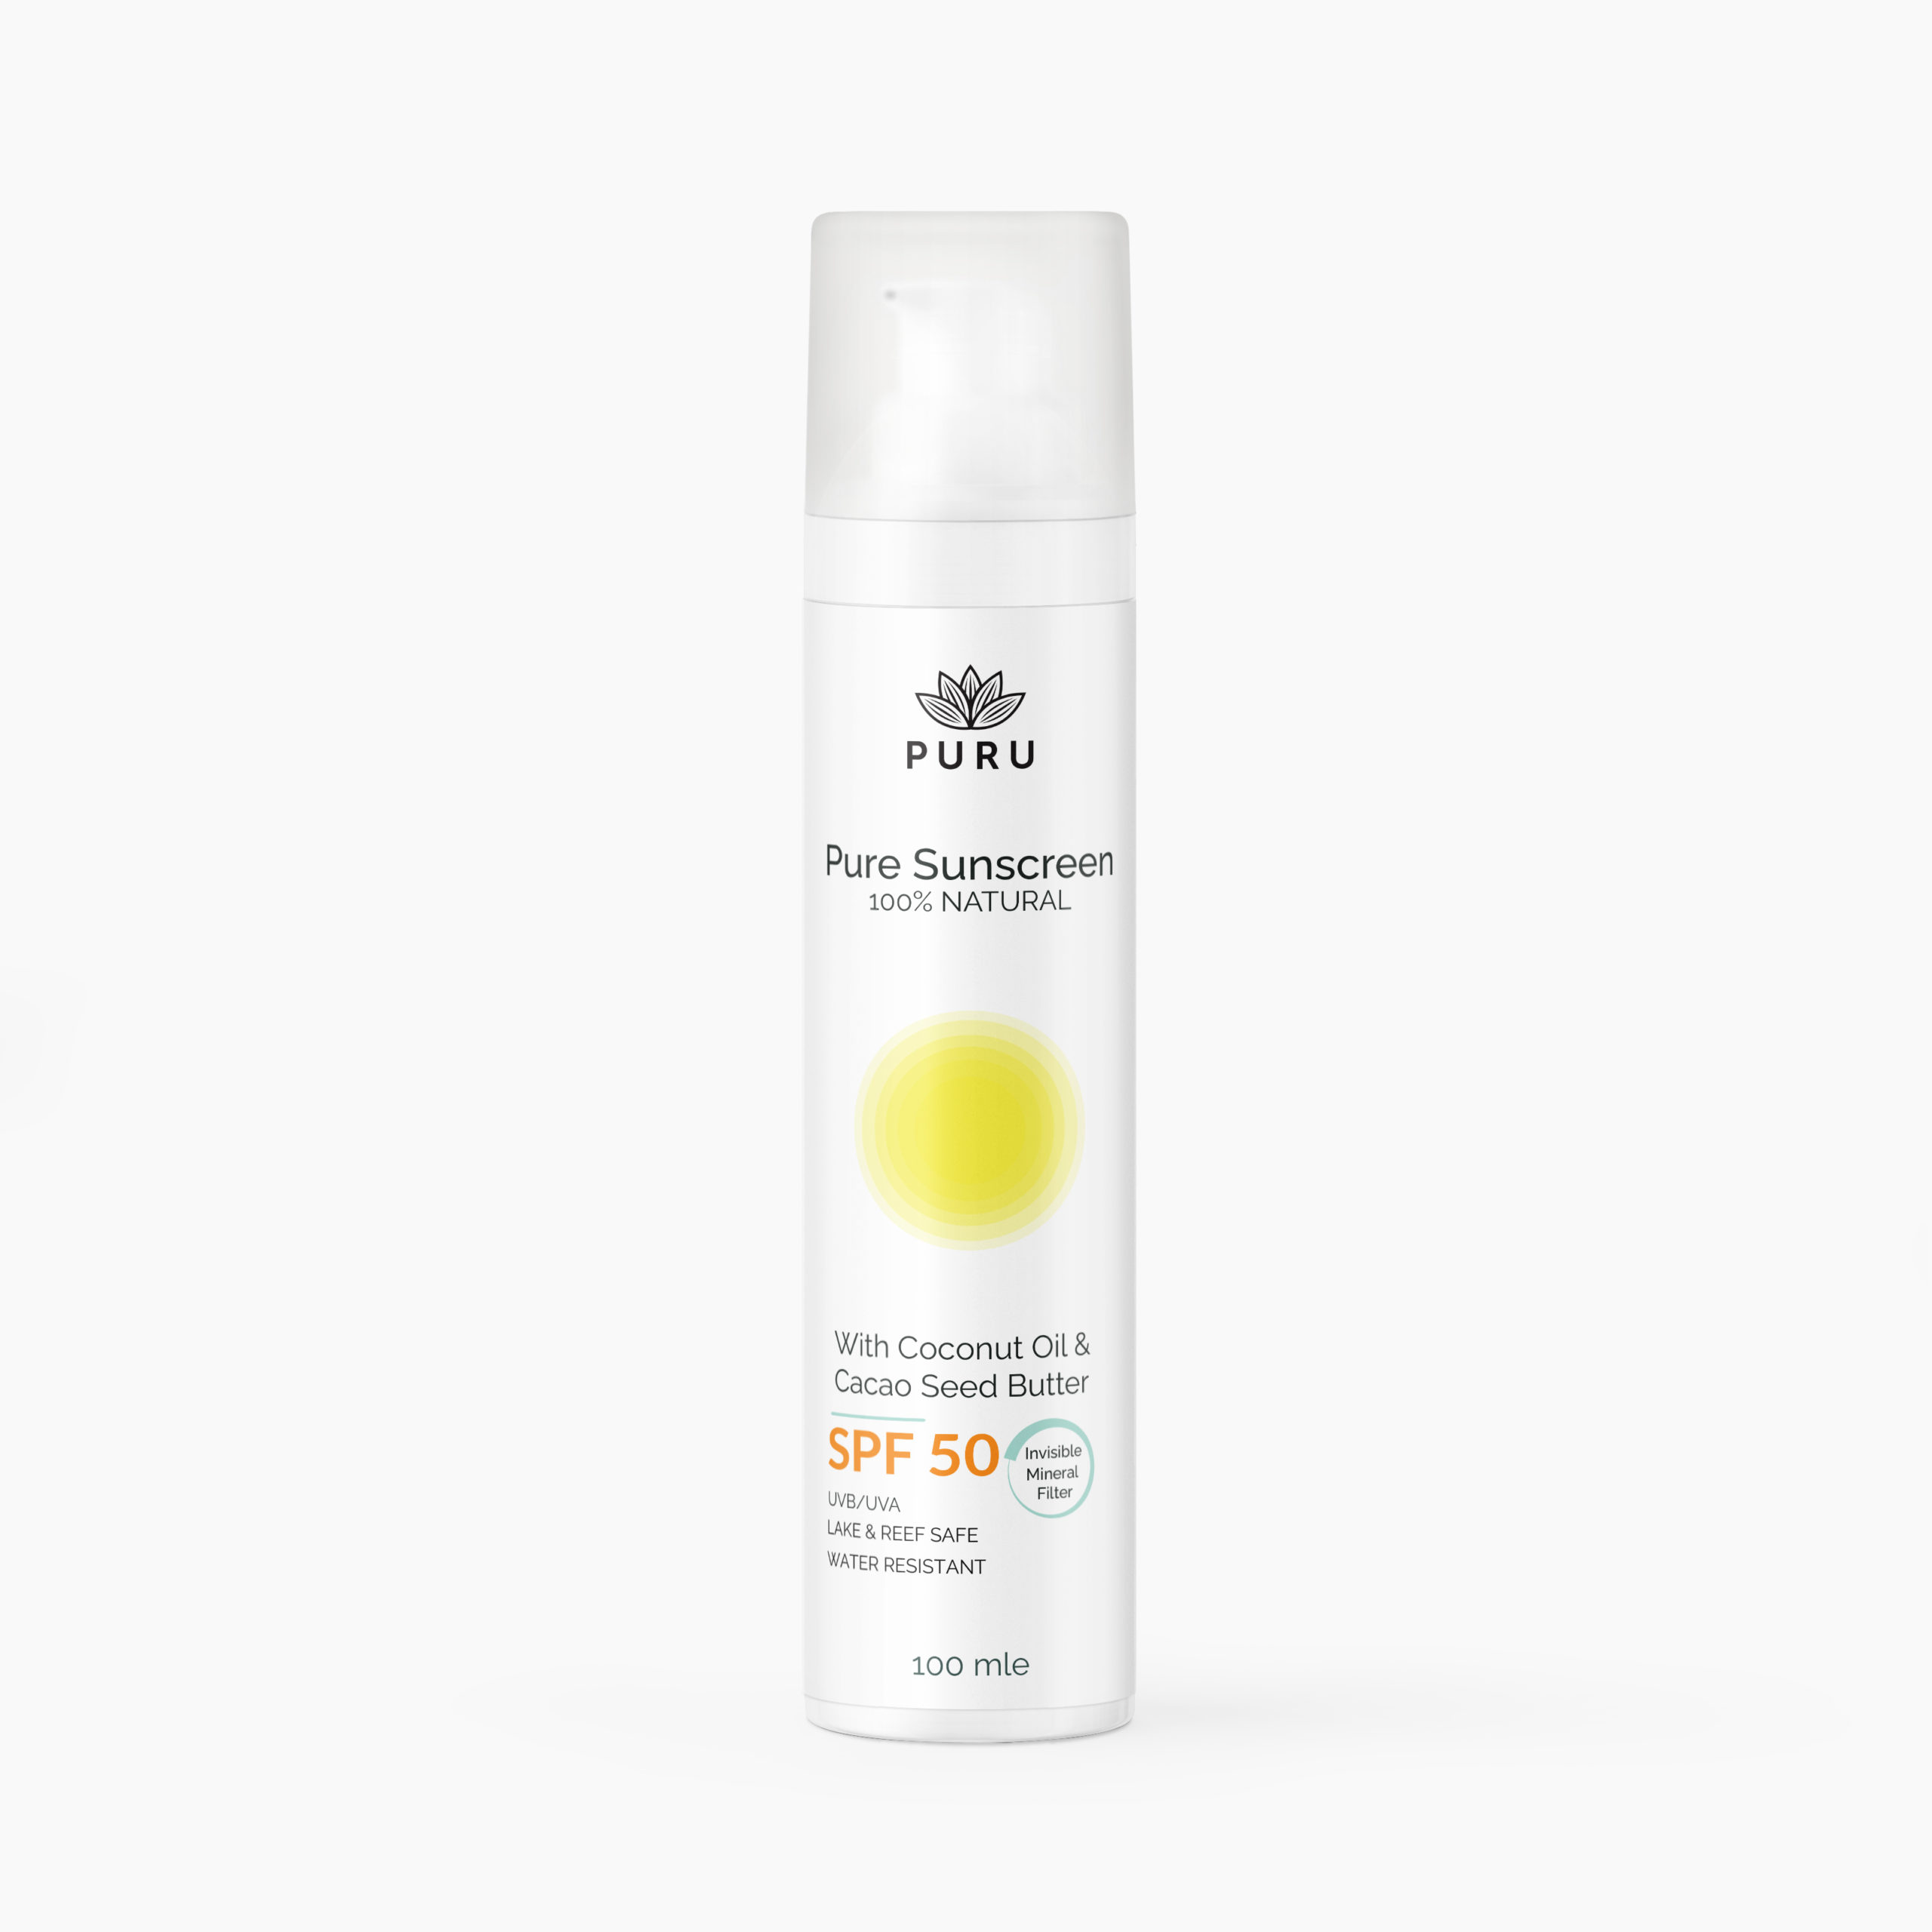 Pure Sunscreen SPF 50 - Zero White Cast